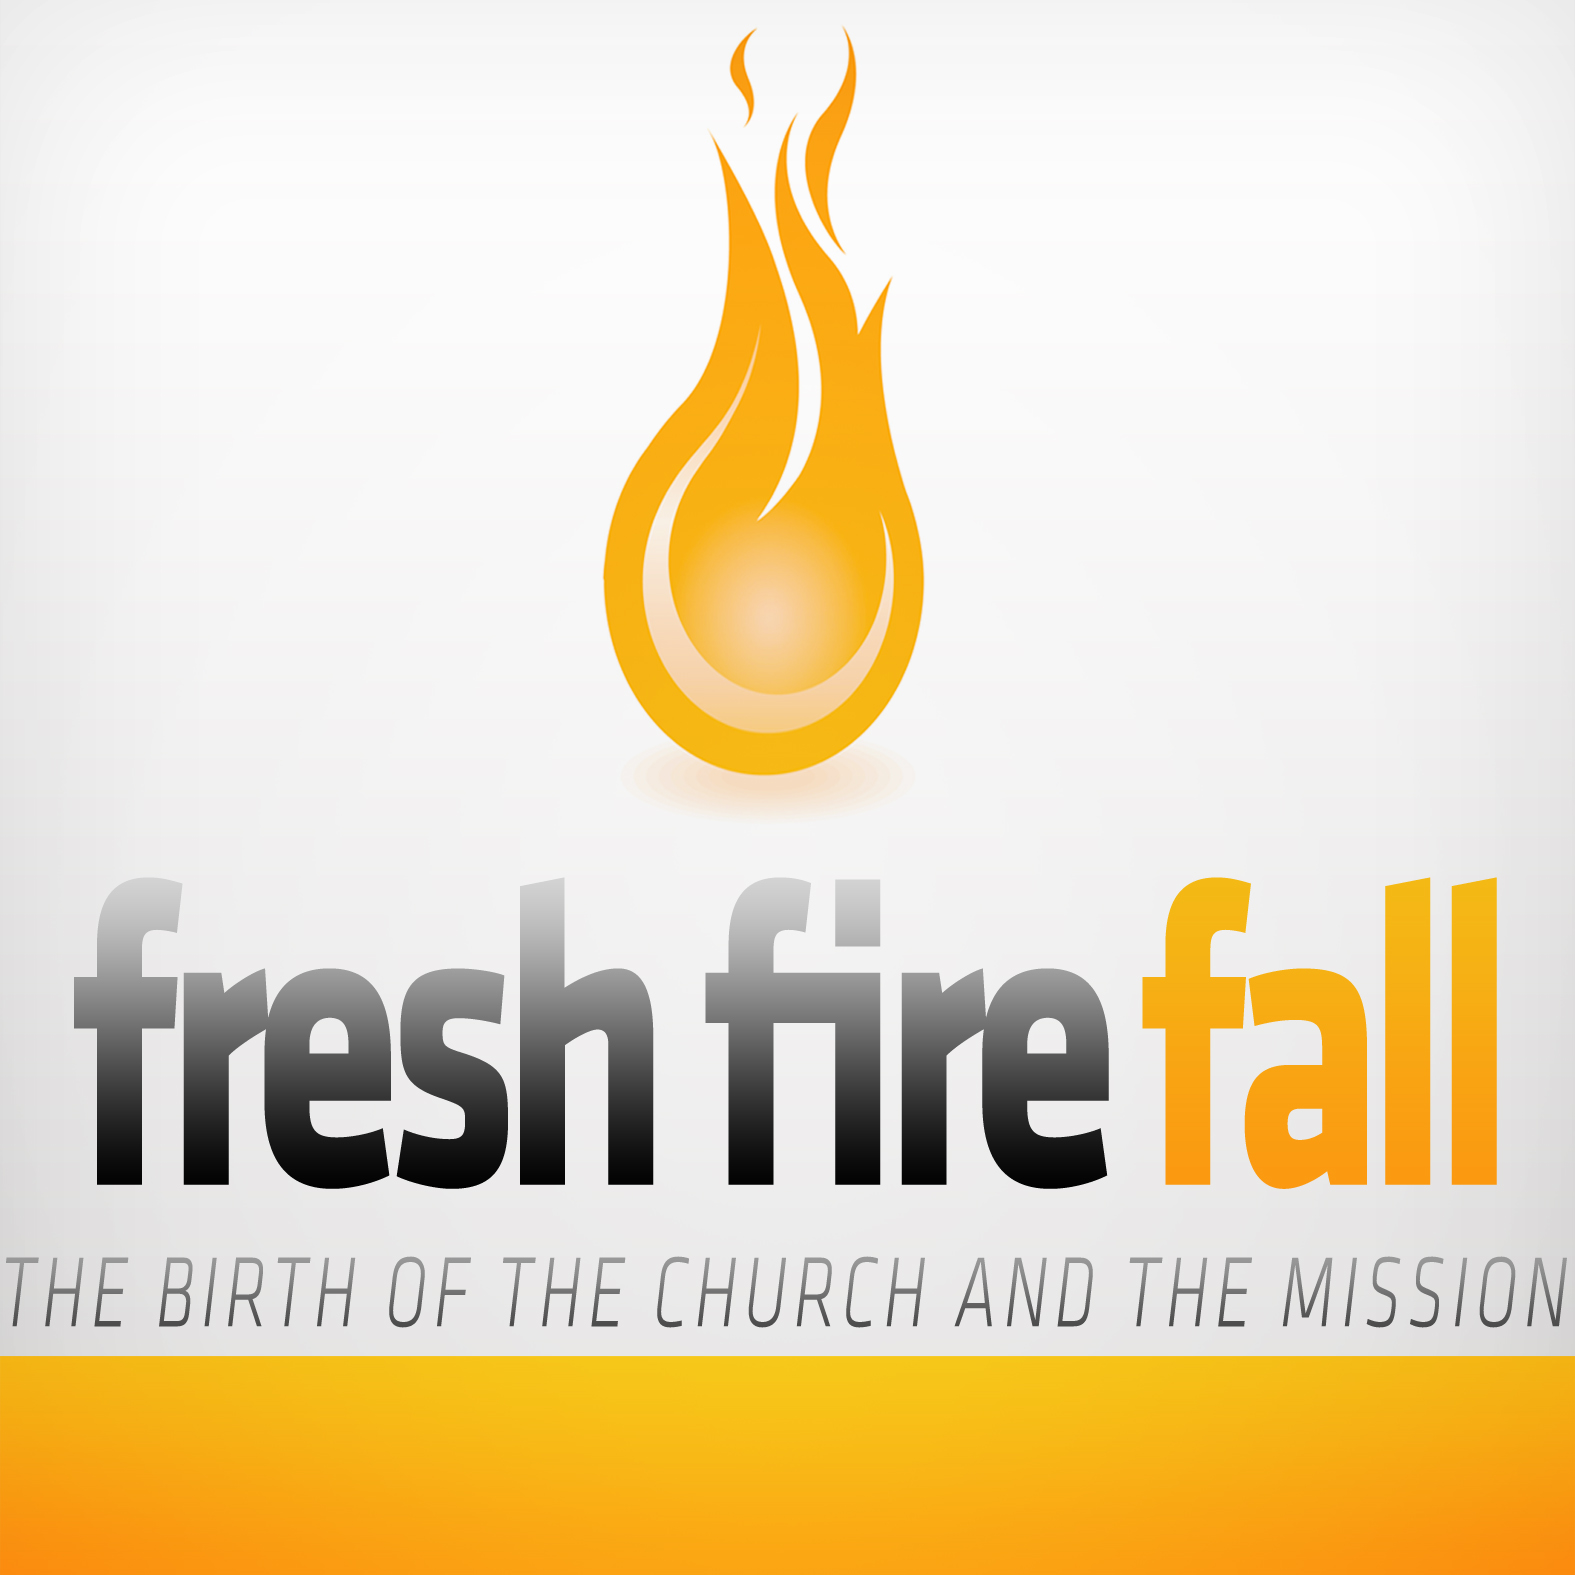 Fresh Fire Fall Part 1